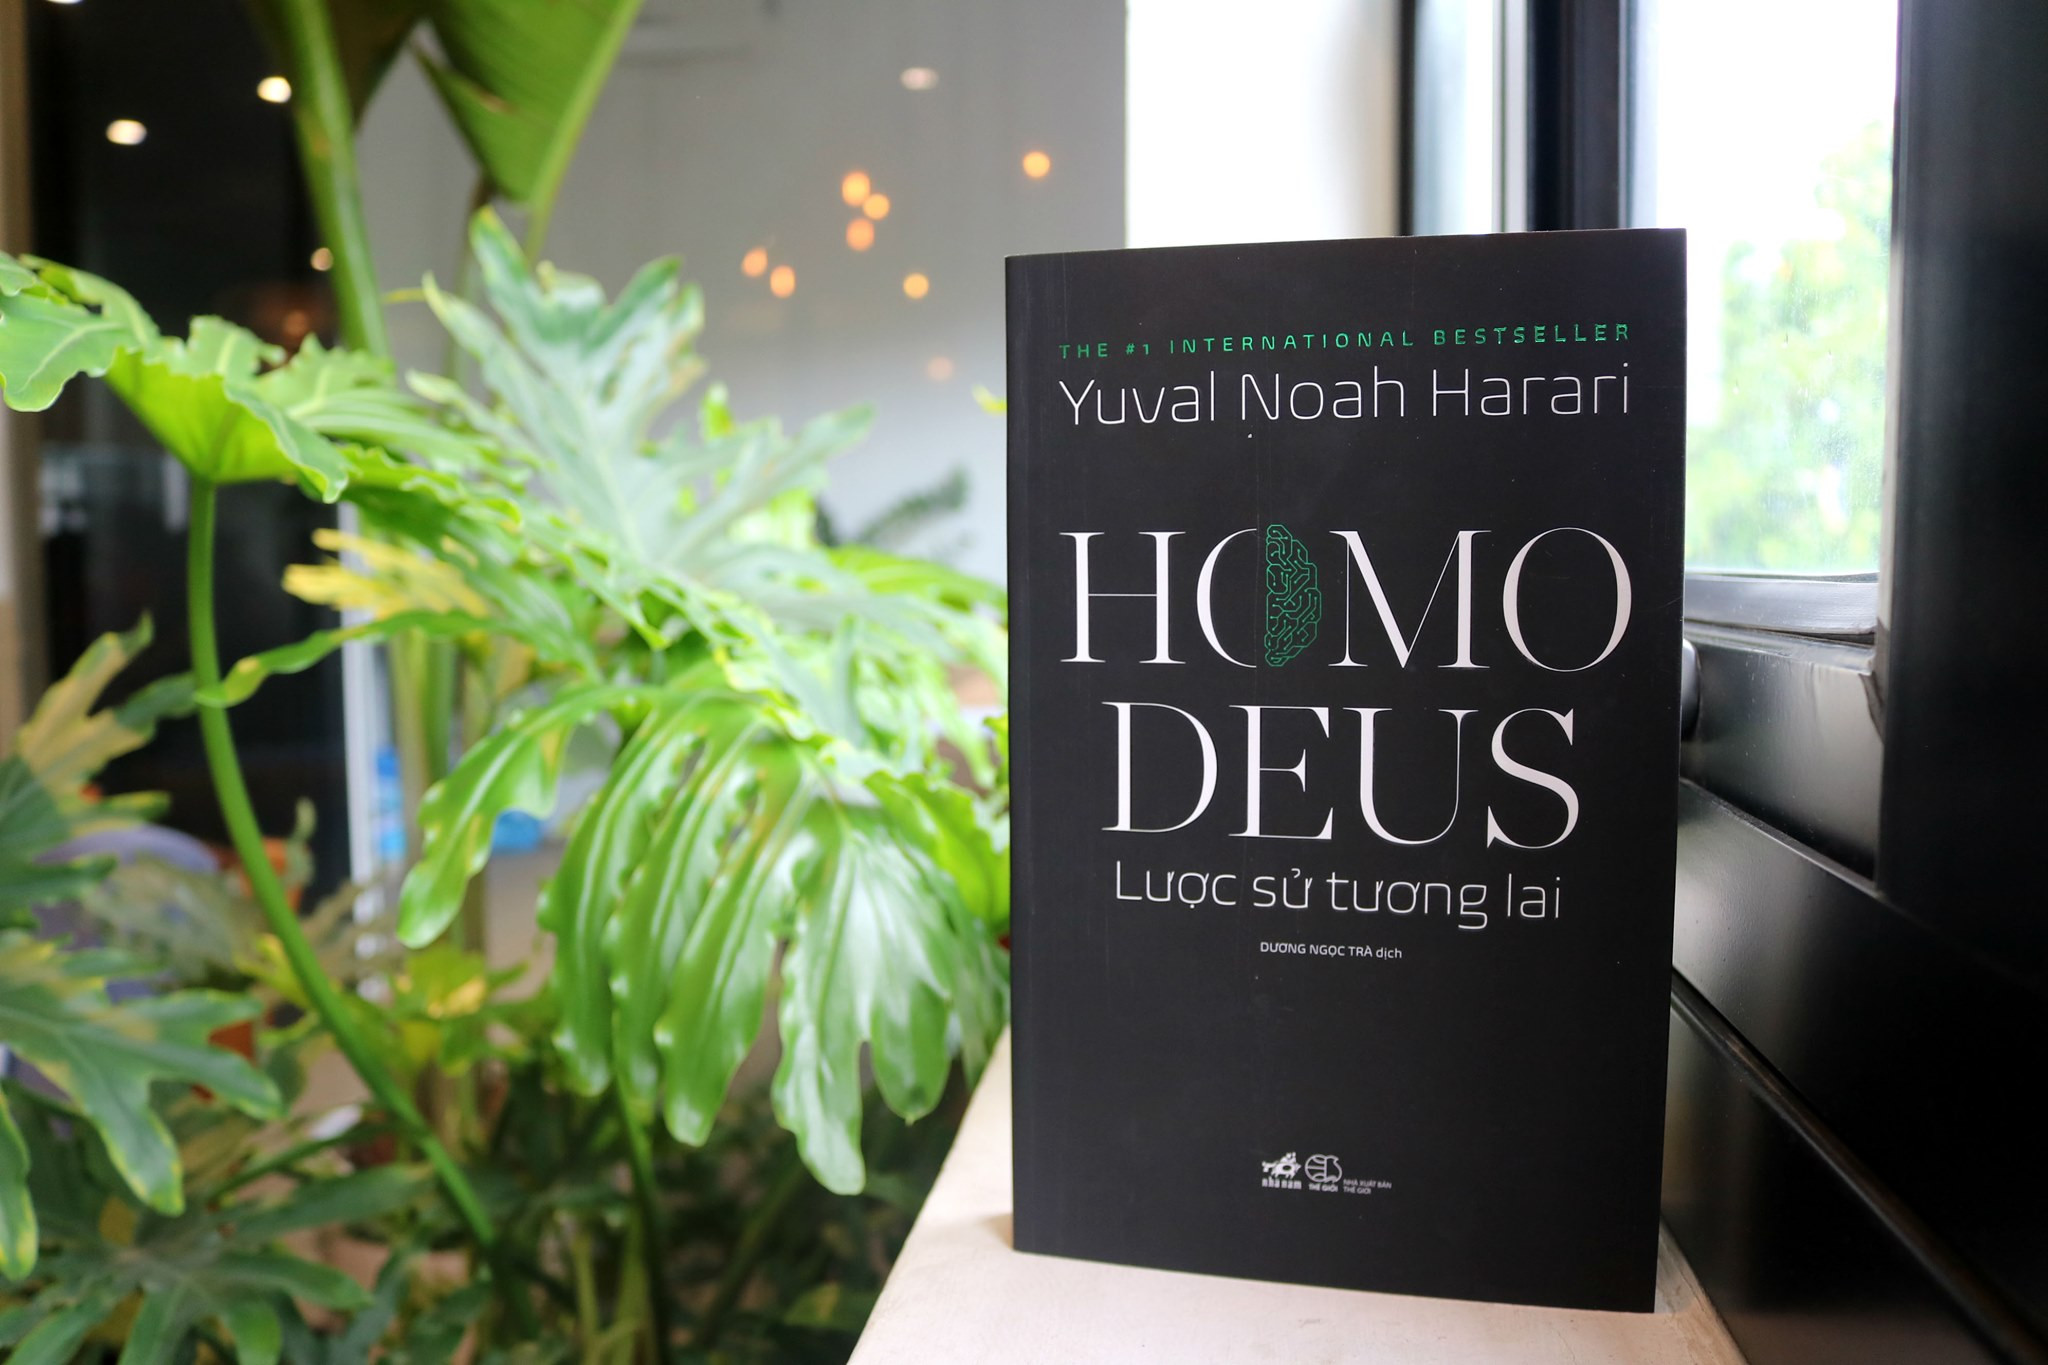 Homo Deus: Lược Sử Tương Lai - Yuval Noah Harari - Dương Ngọc Trà dịch - (bìa mềm)